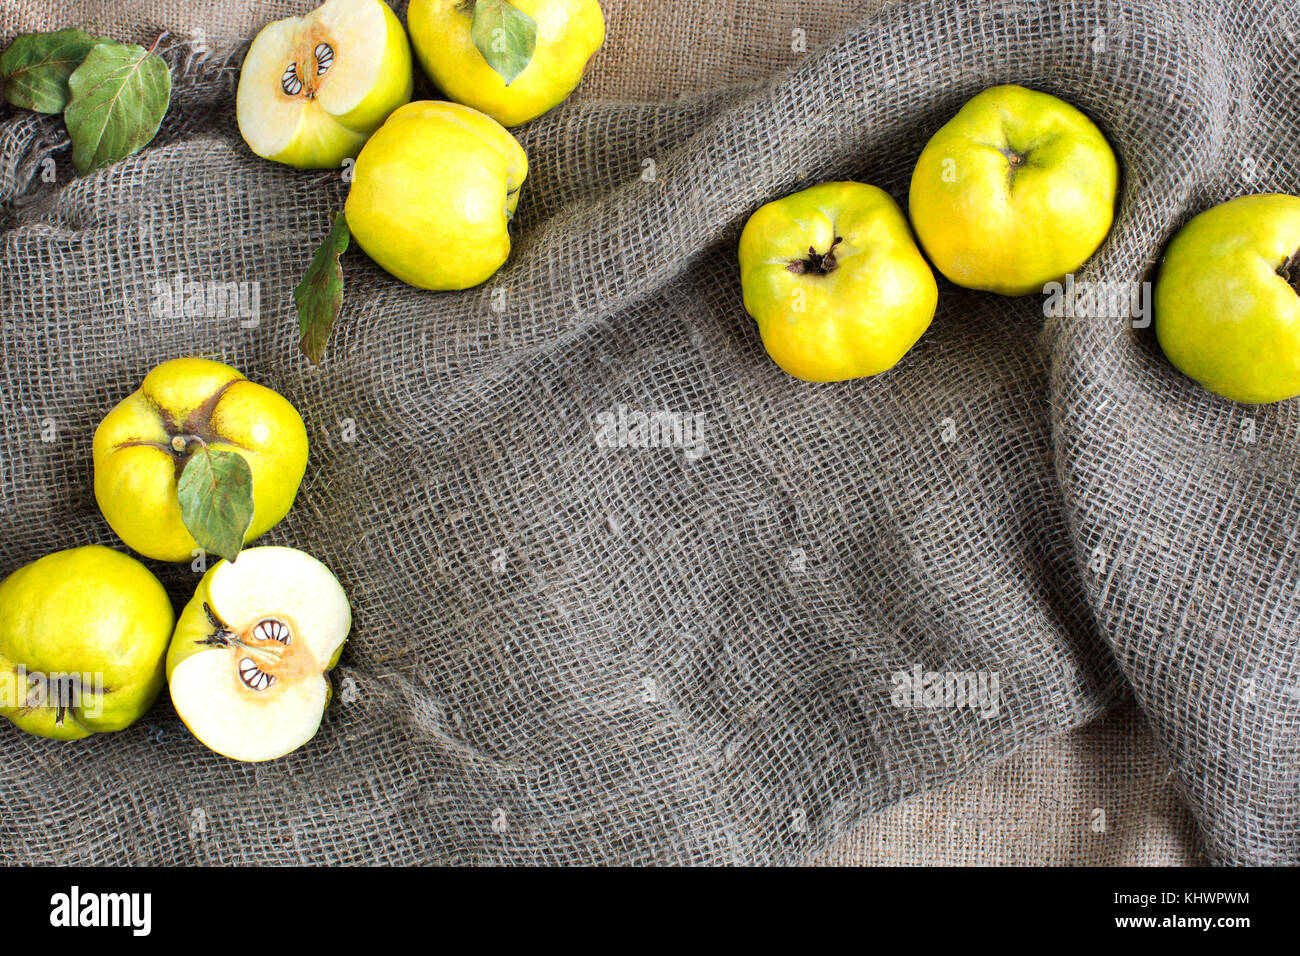 Caduta, uno stile di vita sano, presenta concetto. Frutta fresca colture consistevano di giallo sole cotogne verde con lati, sono giacenti nelle pieghe di tessuto greggio di sacco Foto Stock